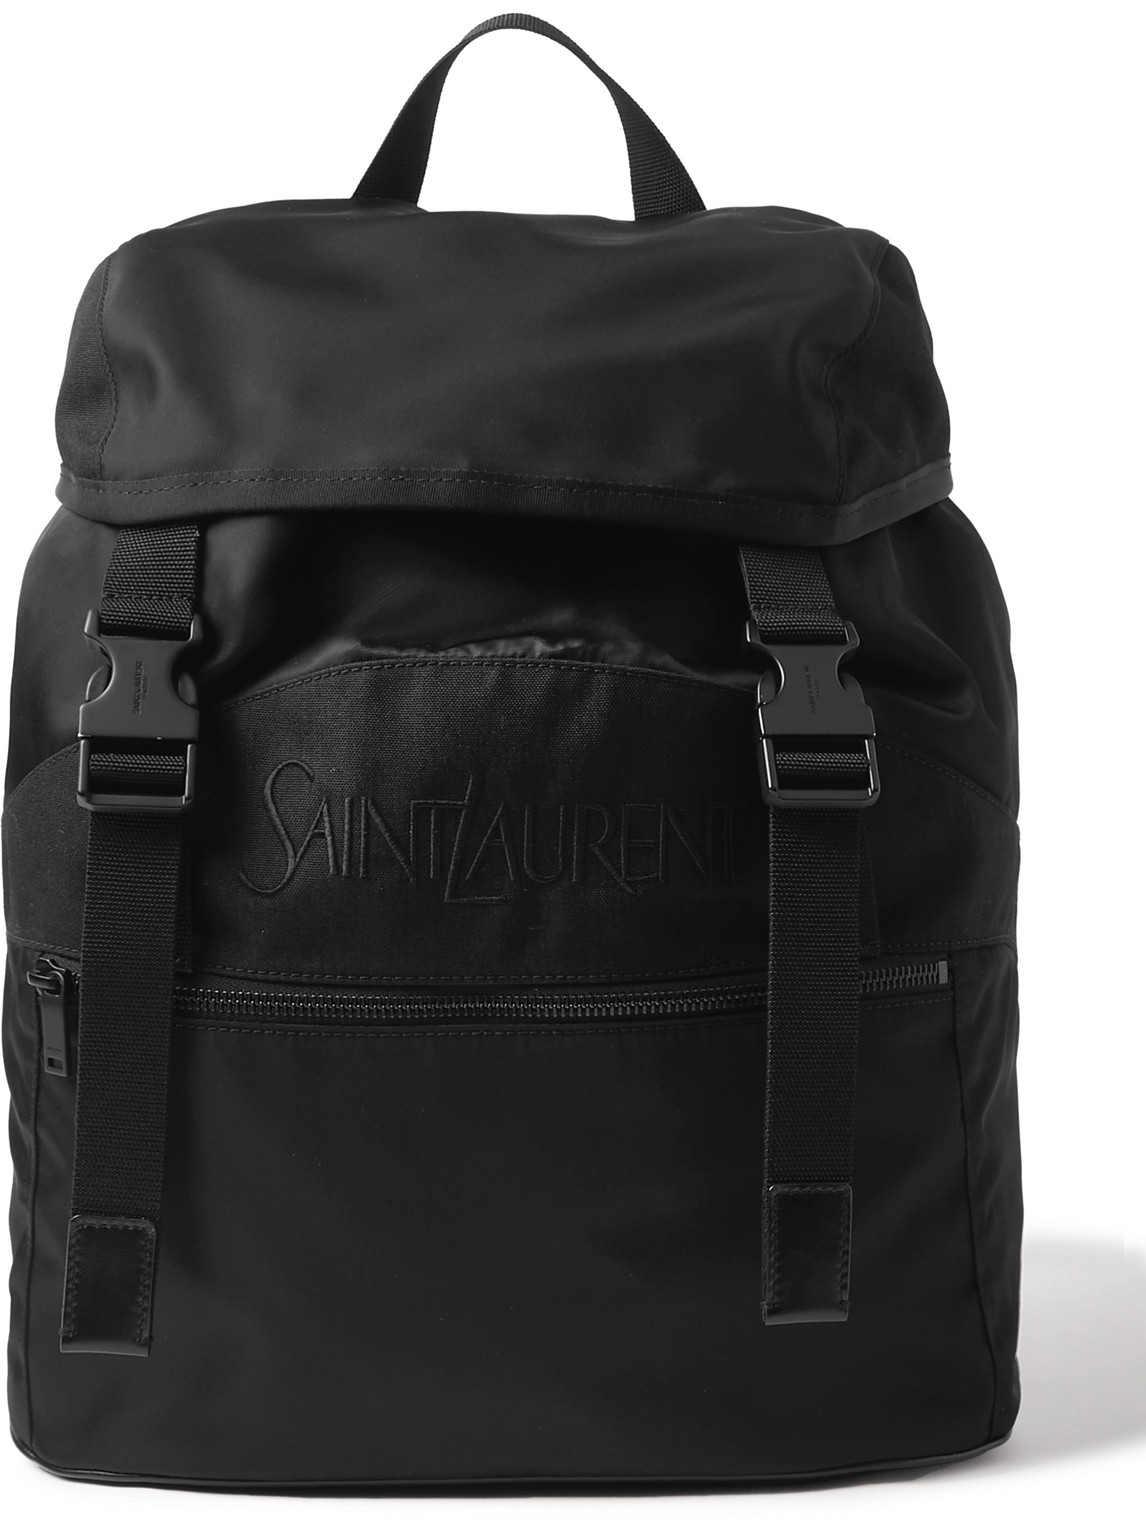 SAINT LAURENT - Logo-Embroidered Leather-Trimmed Shell Backpack - Men - Black von SAINT LAURENT